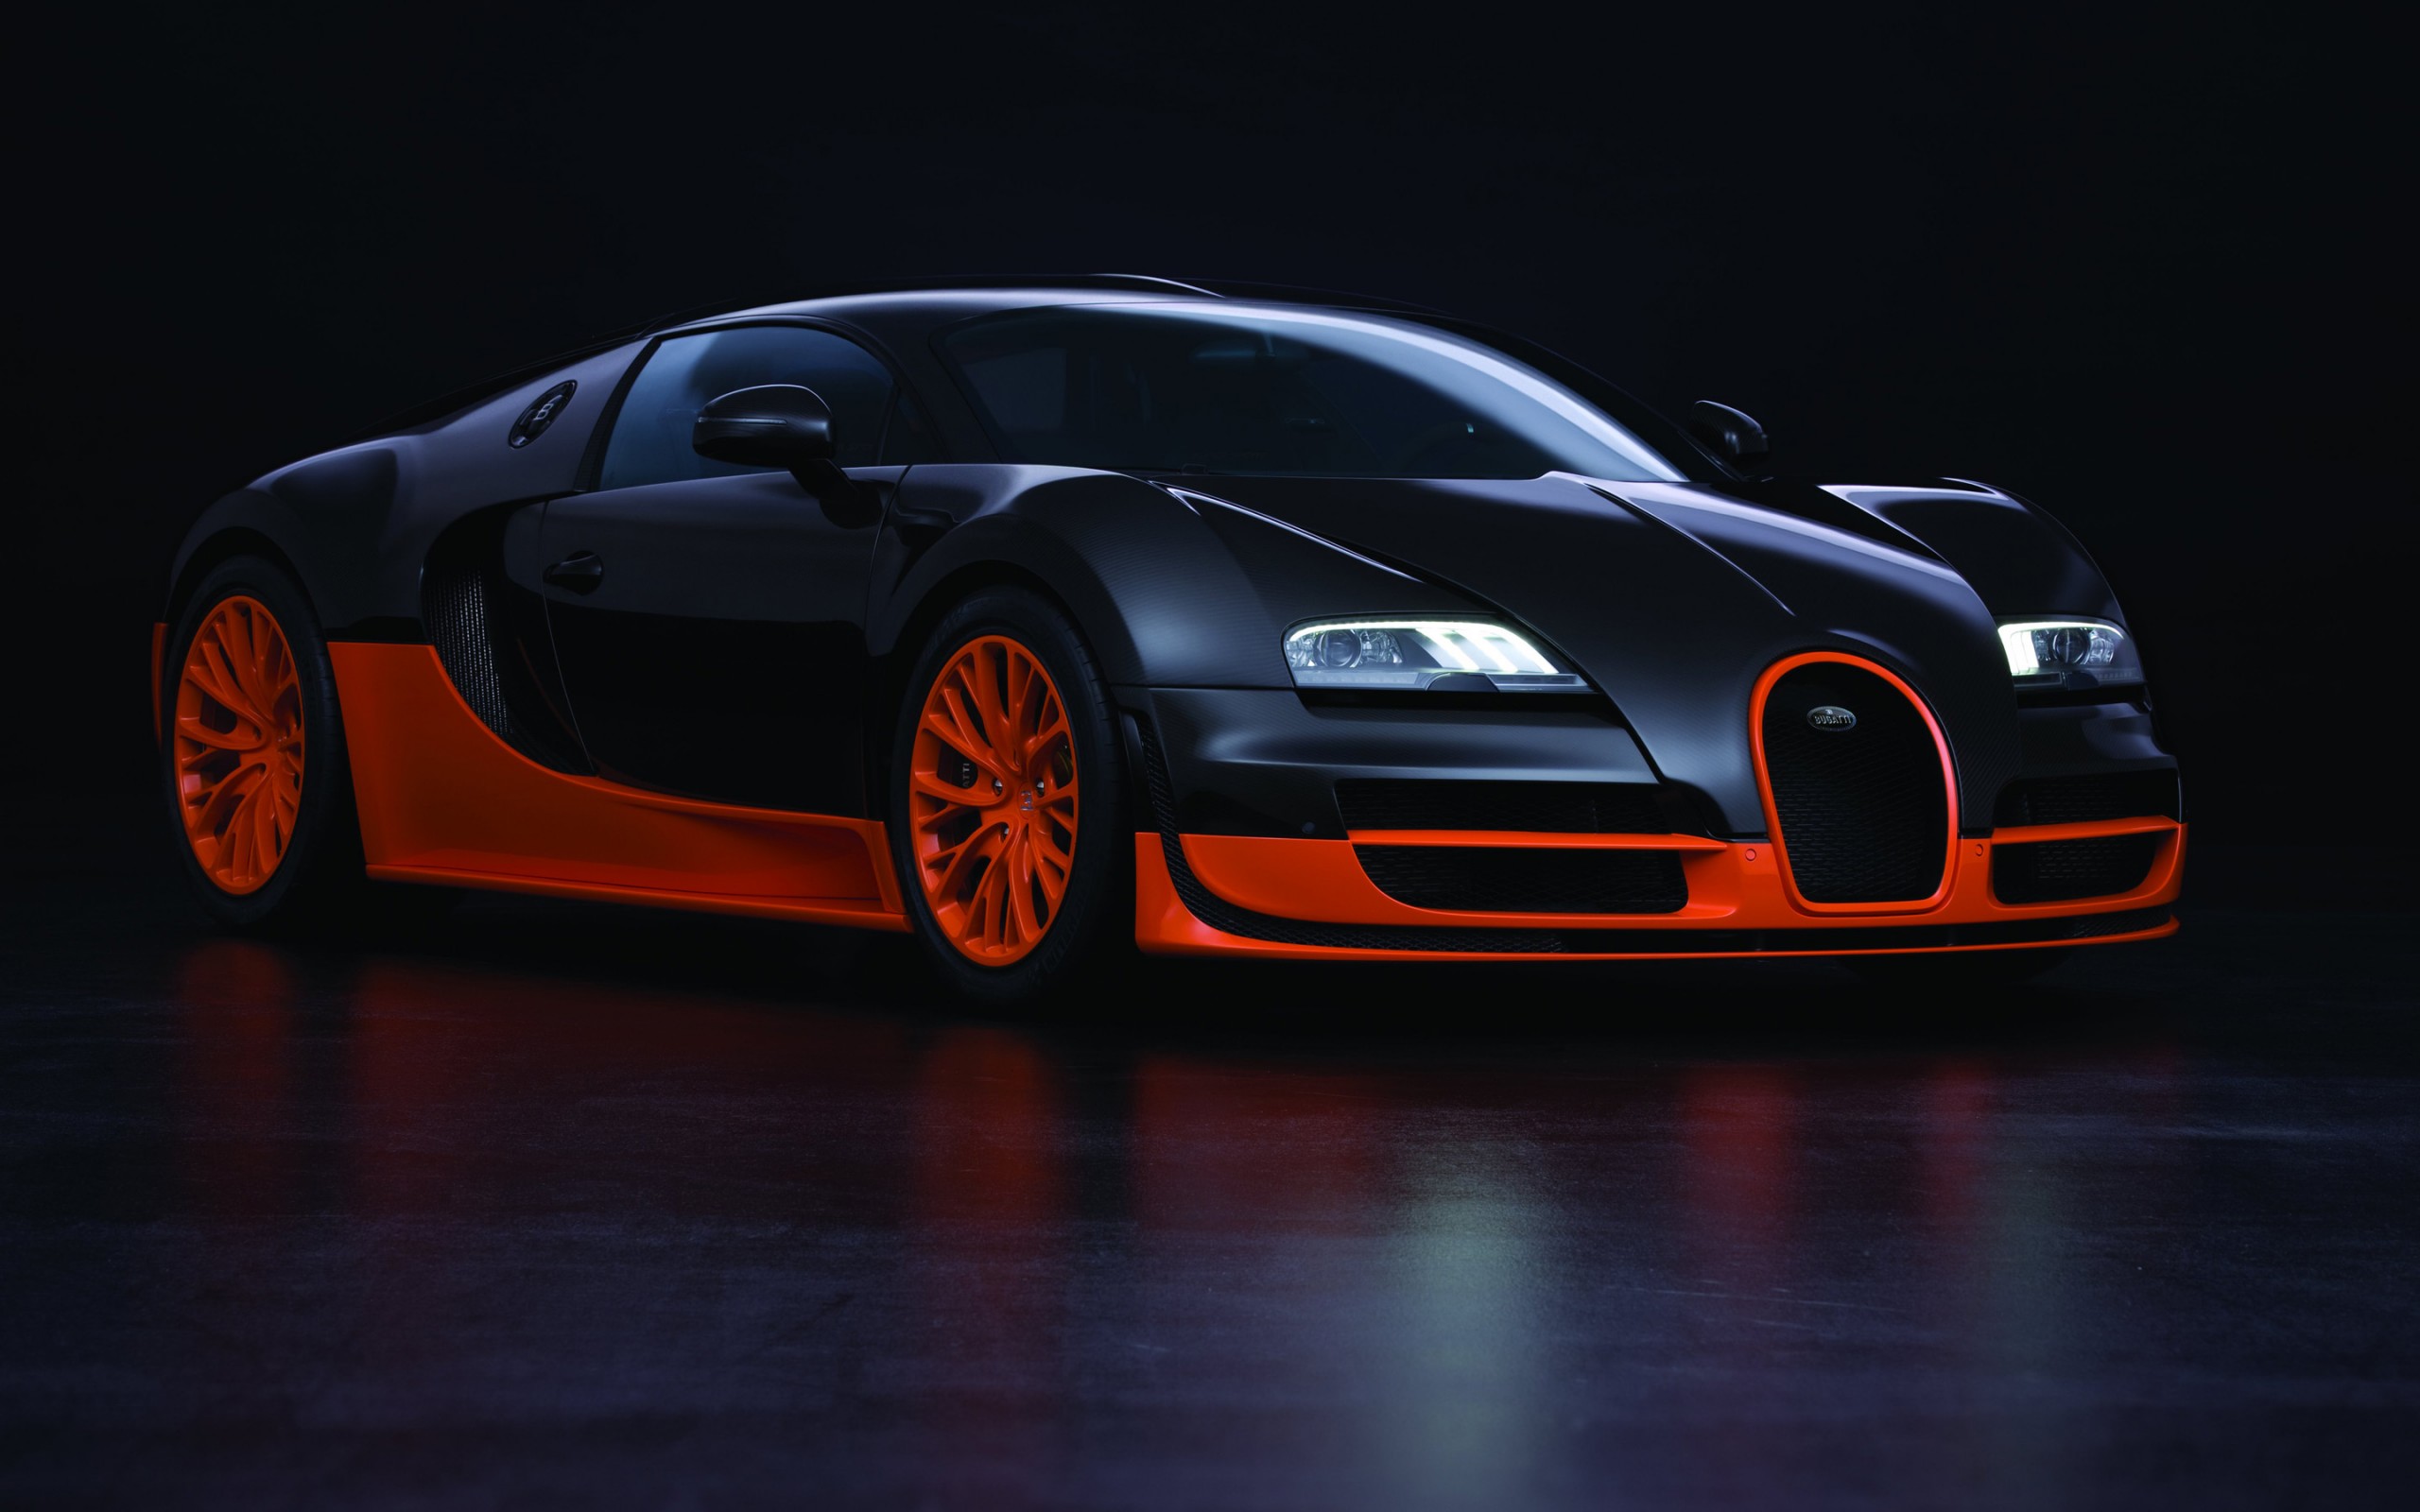 Black Orange Bugatti Veyron 16 4 Super Sport HD Wallpaper Picture